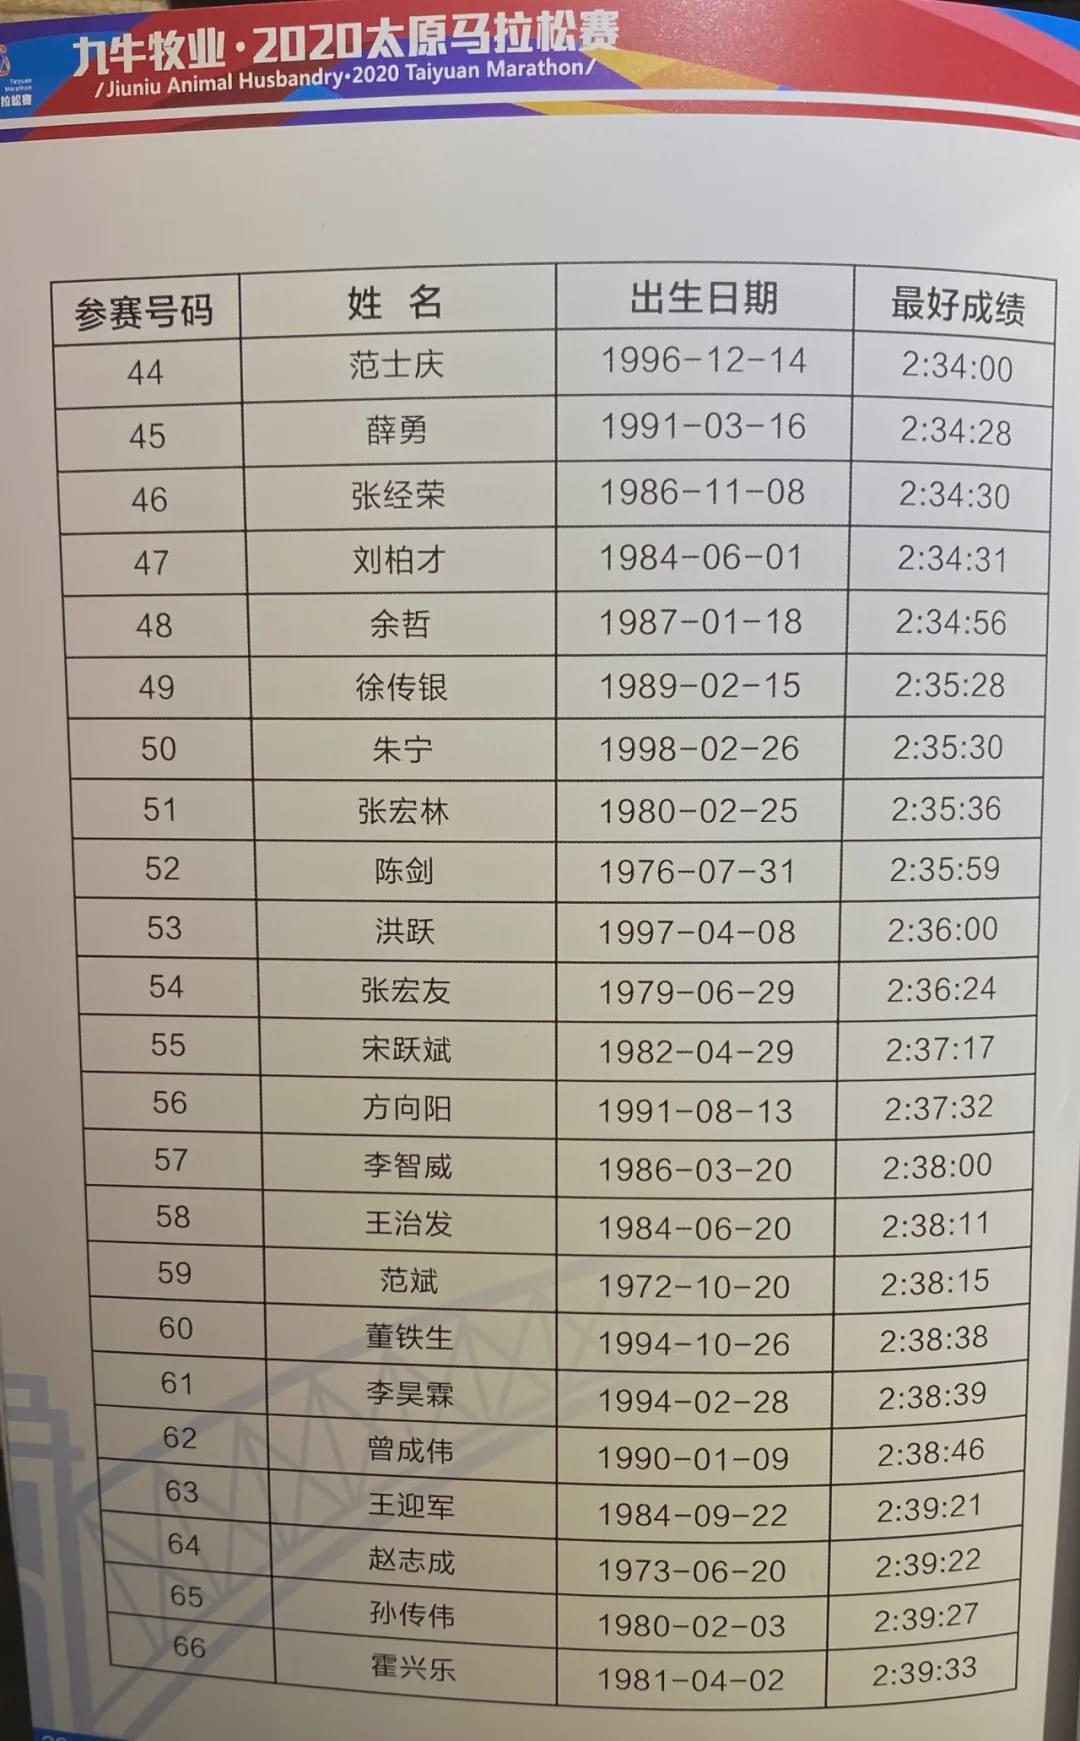 2020太原马拉松鸣枪！杨成祥、姚妙夺男女冠军，均破赛道纪录！(12)